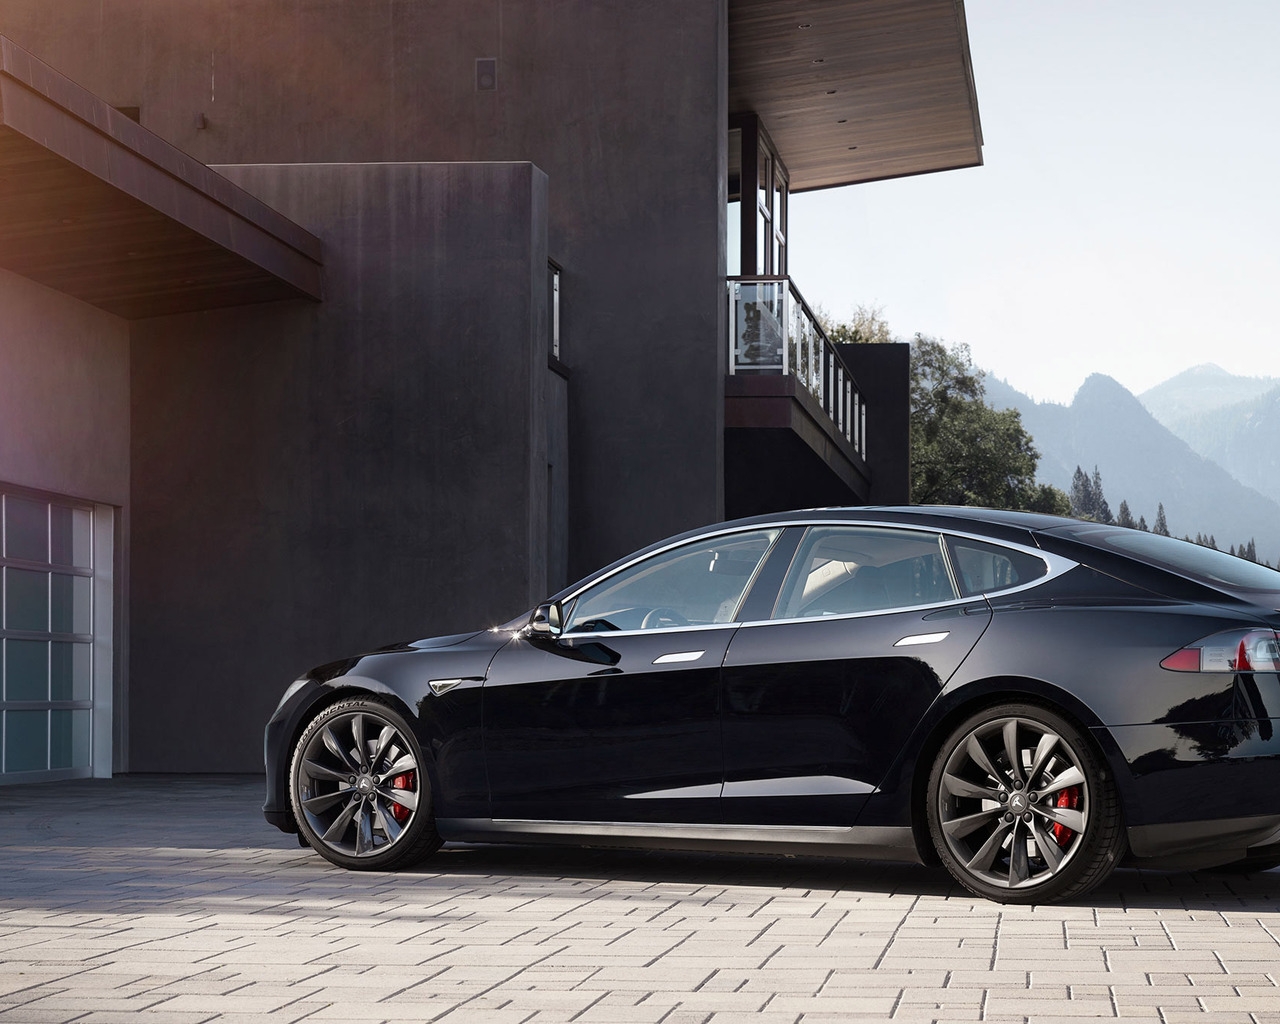 Black Tesla Model S 2015 for 1280 x 1024 resolution